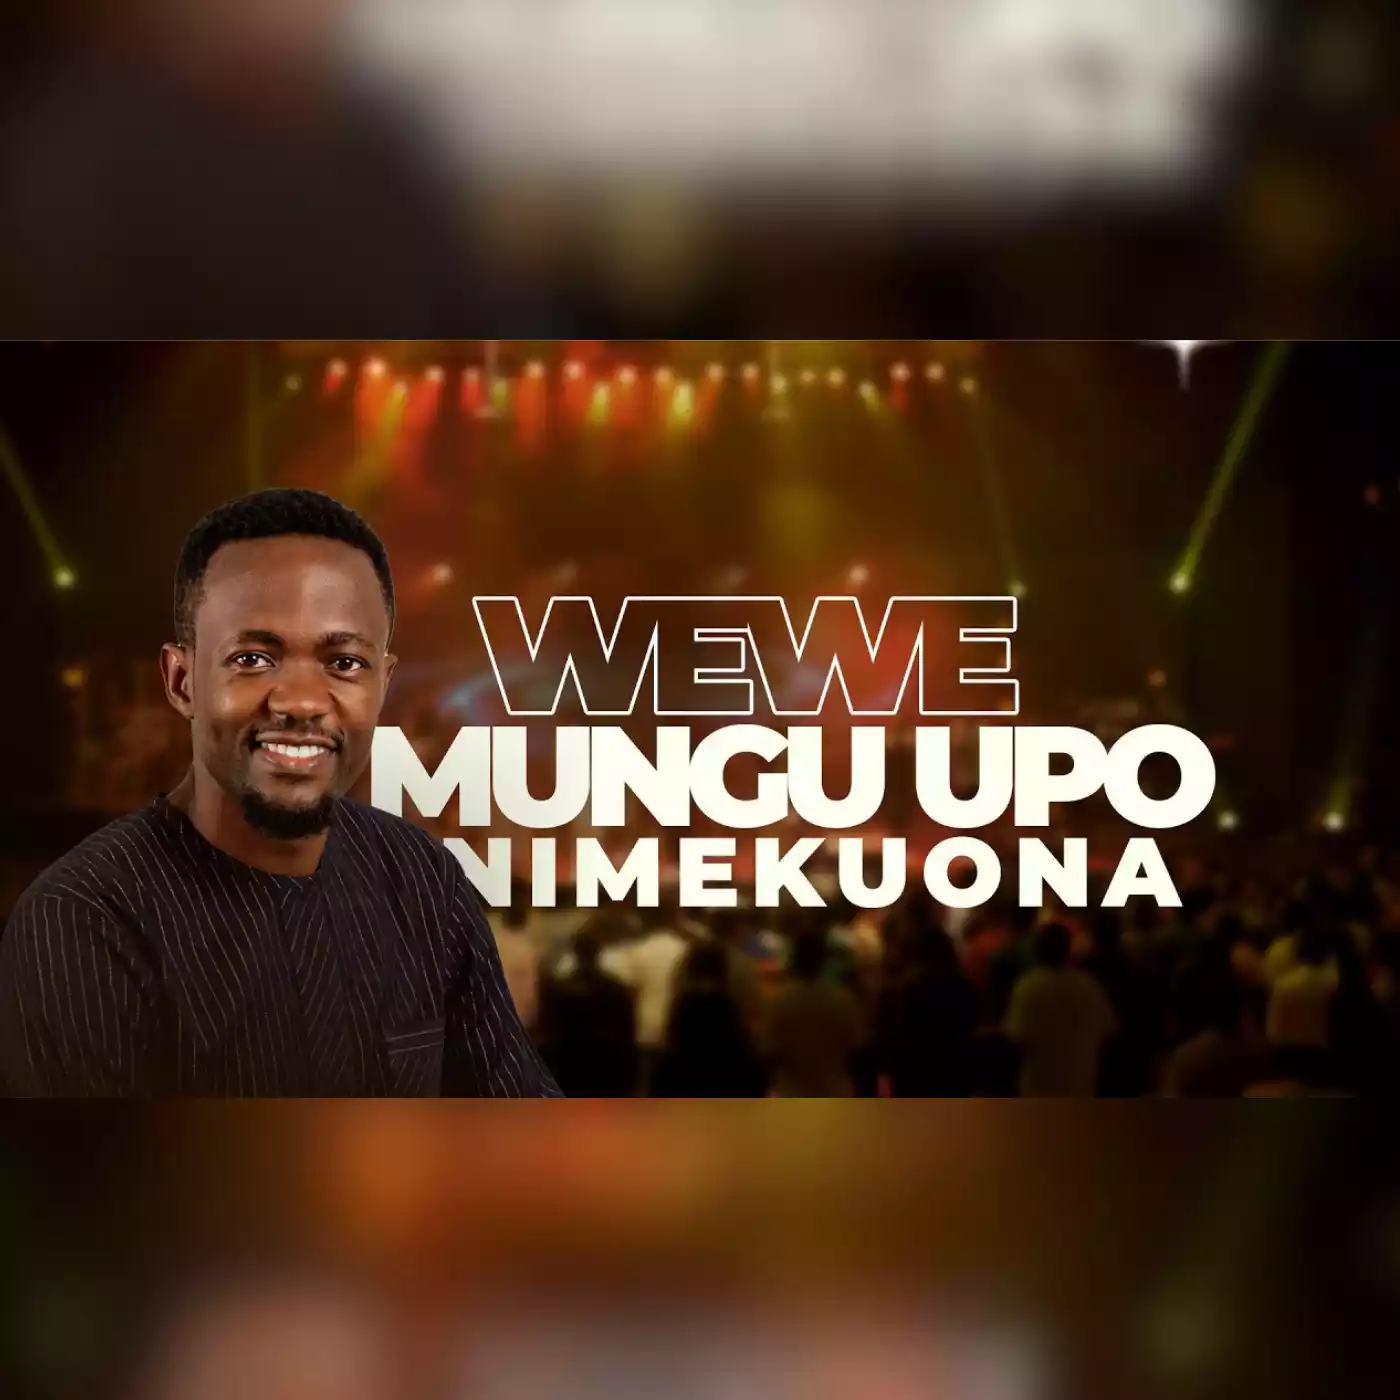 Wewe Mungu Upo Nimekuona By Dr Ipyana 2